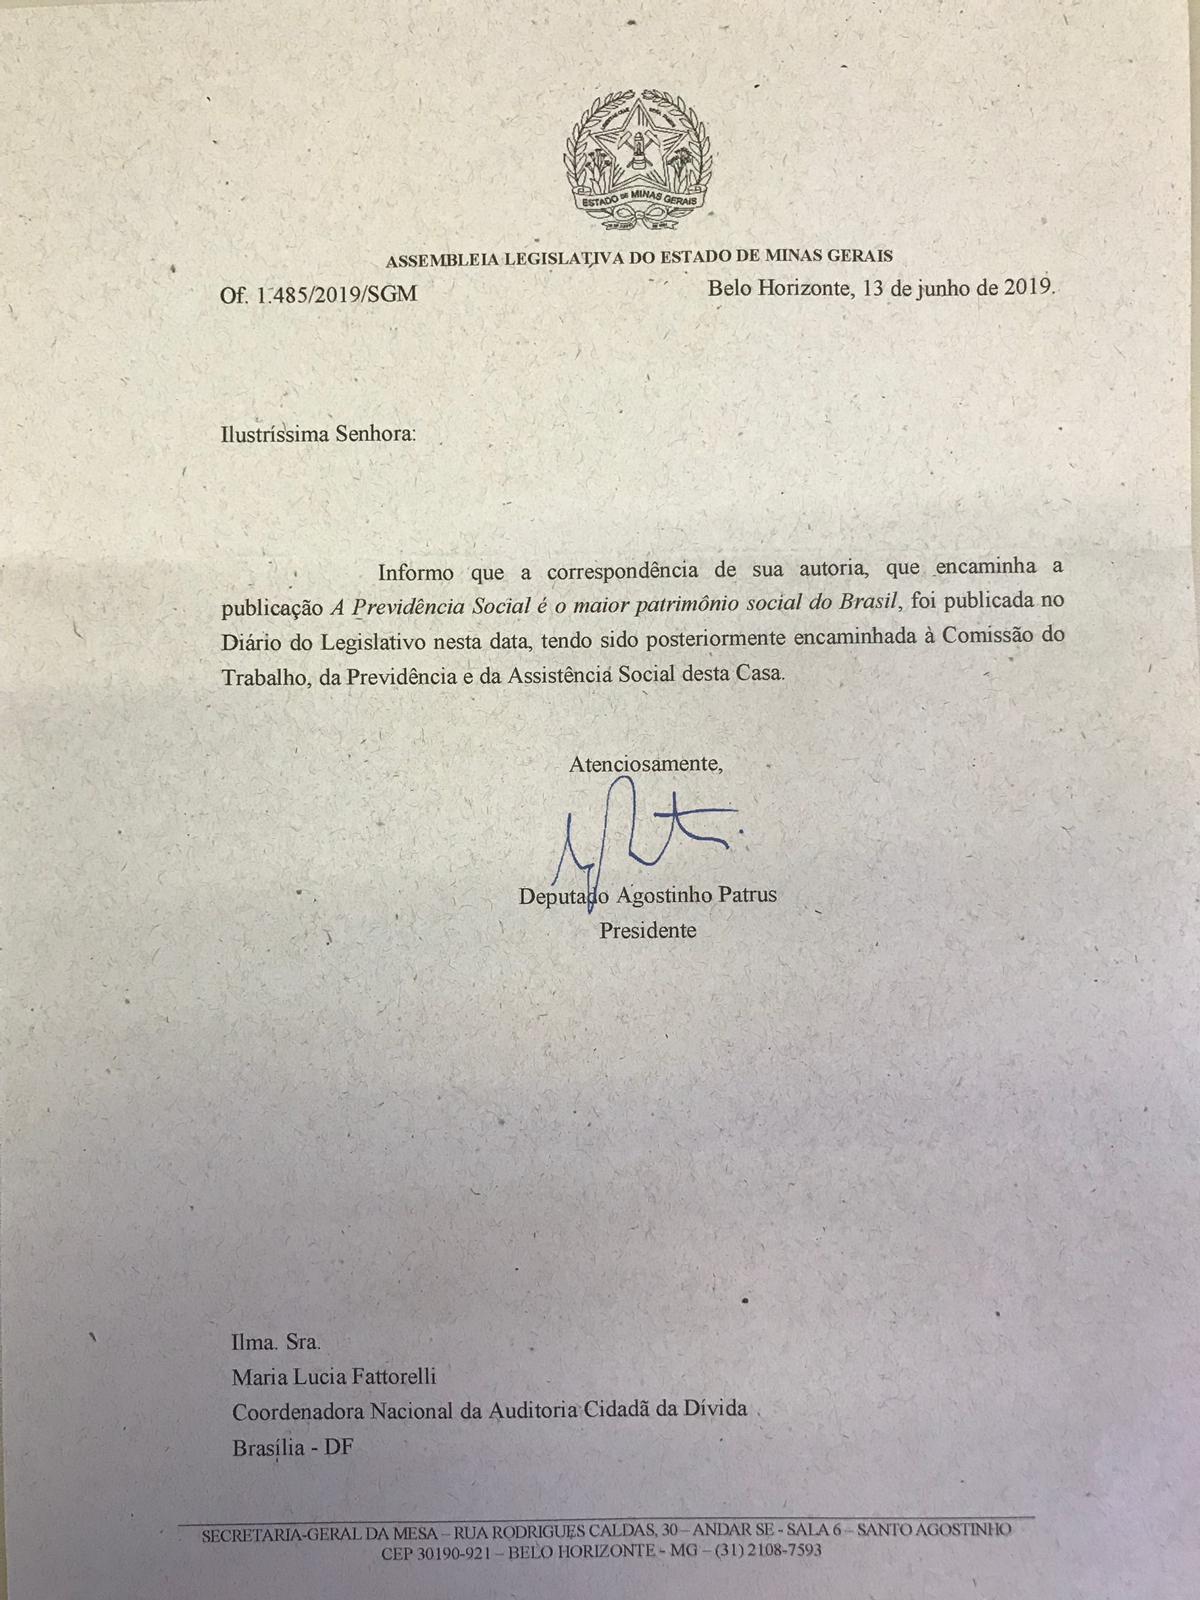 Assembleia de Minas Gerais encaminha carta da Auditoria Cidadã sobre previdência social e dívida dos estados a Comissão da Casa